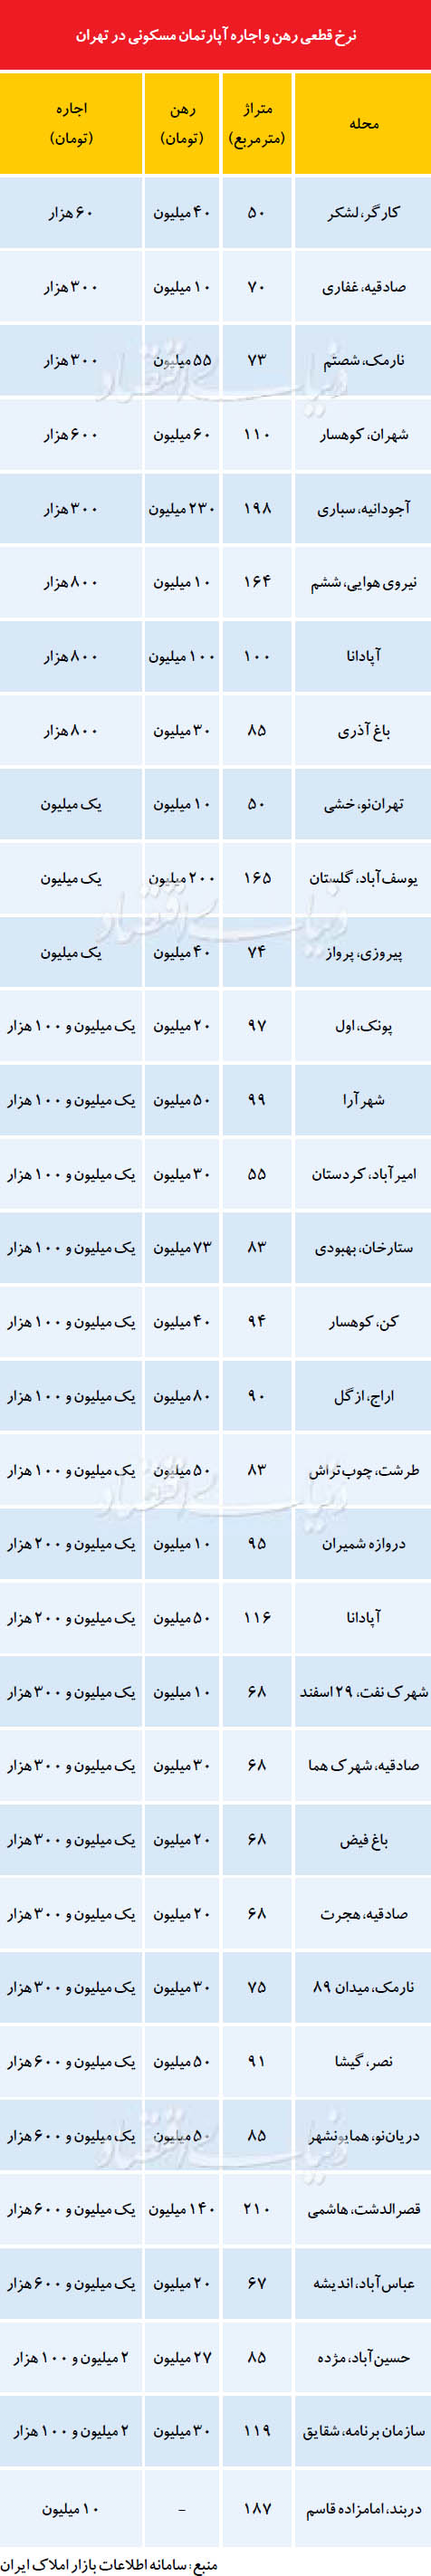 نرخ رهن و اجاره آپارتمان در تهران (جدول)